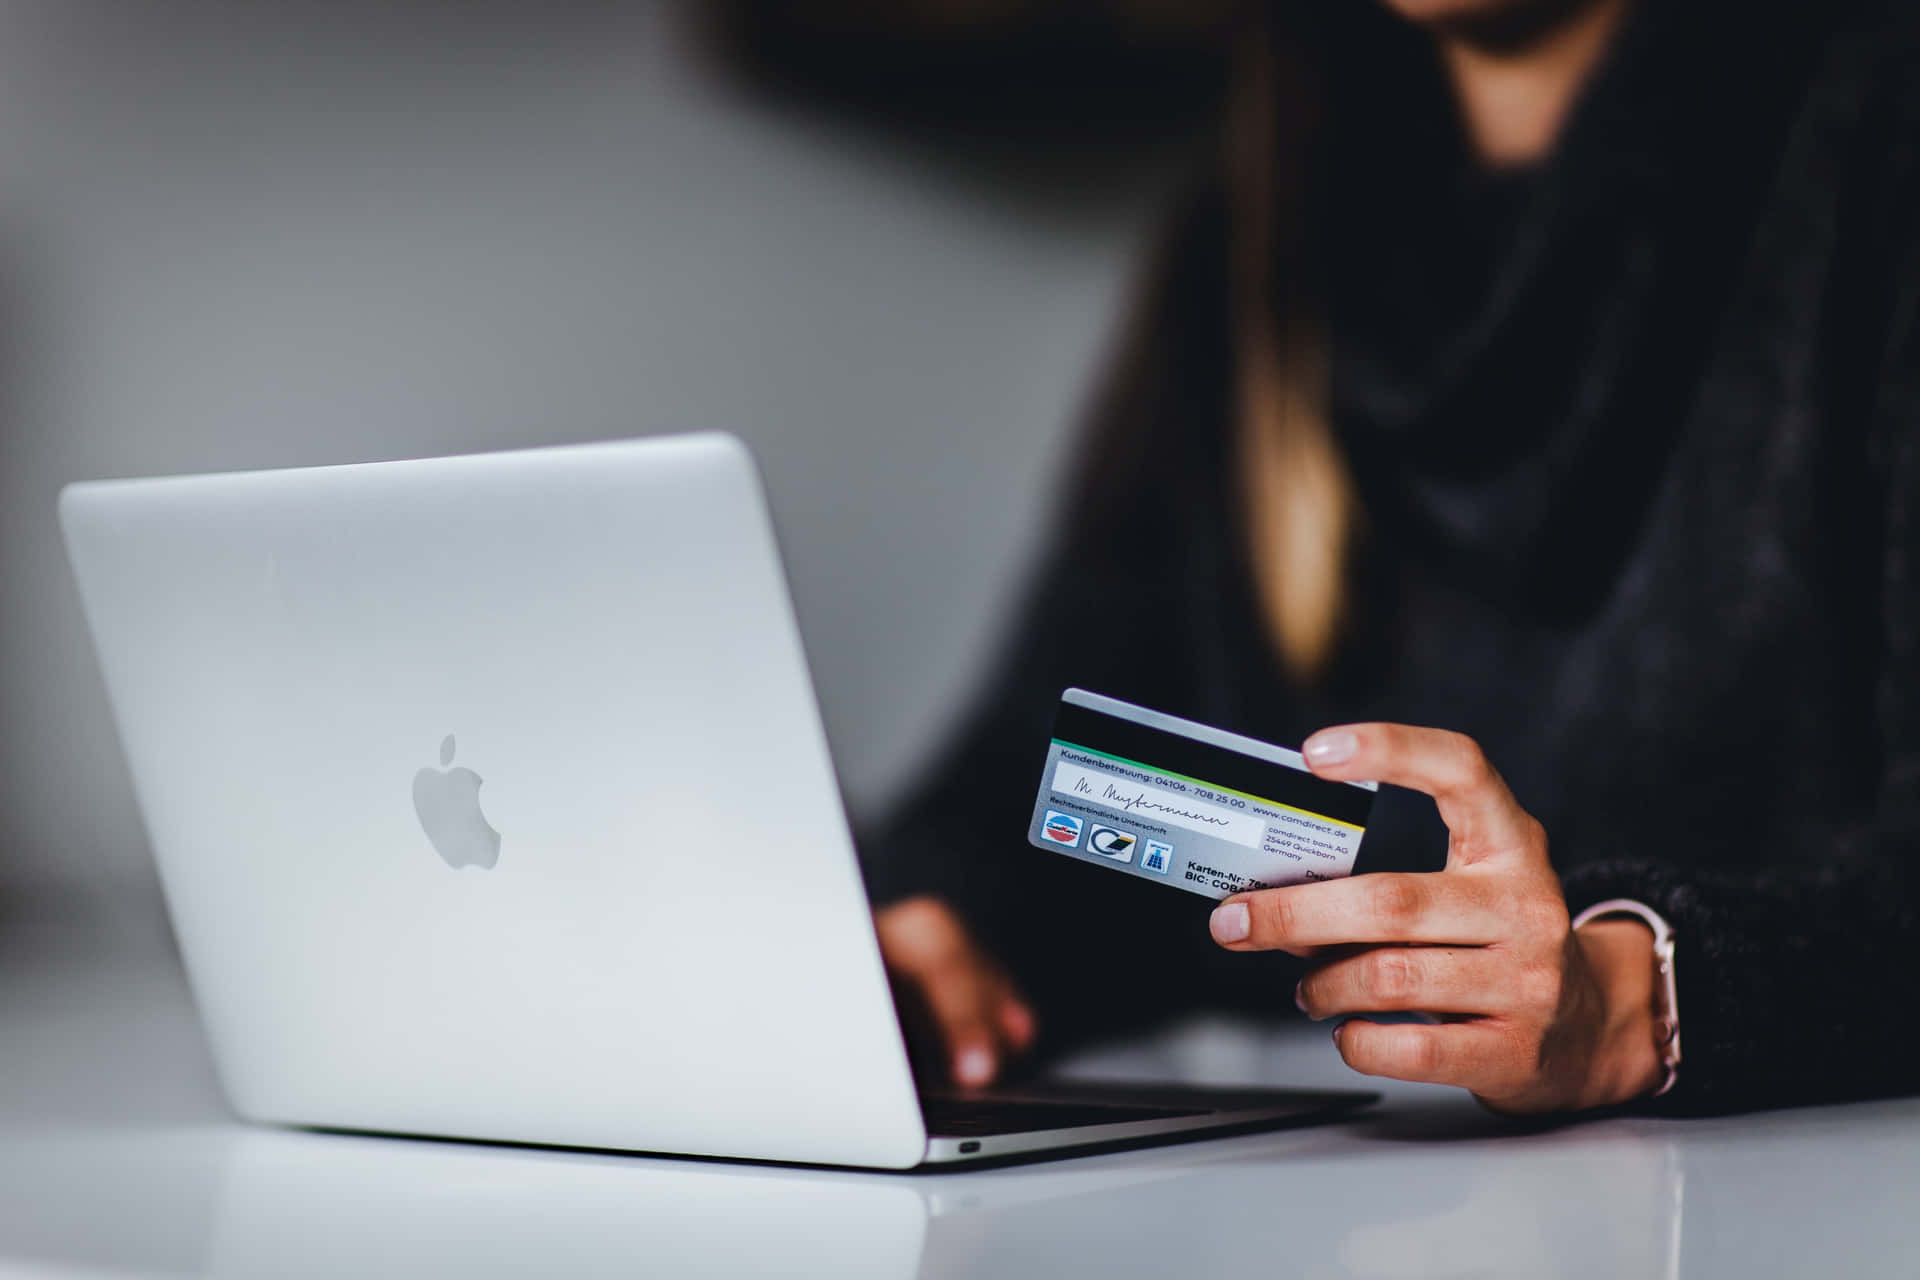 Enkvinna Som Håller I Ett Kreditkort Framför En Laptop